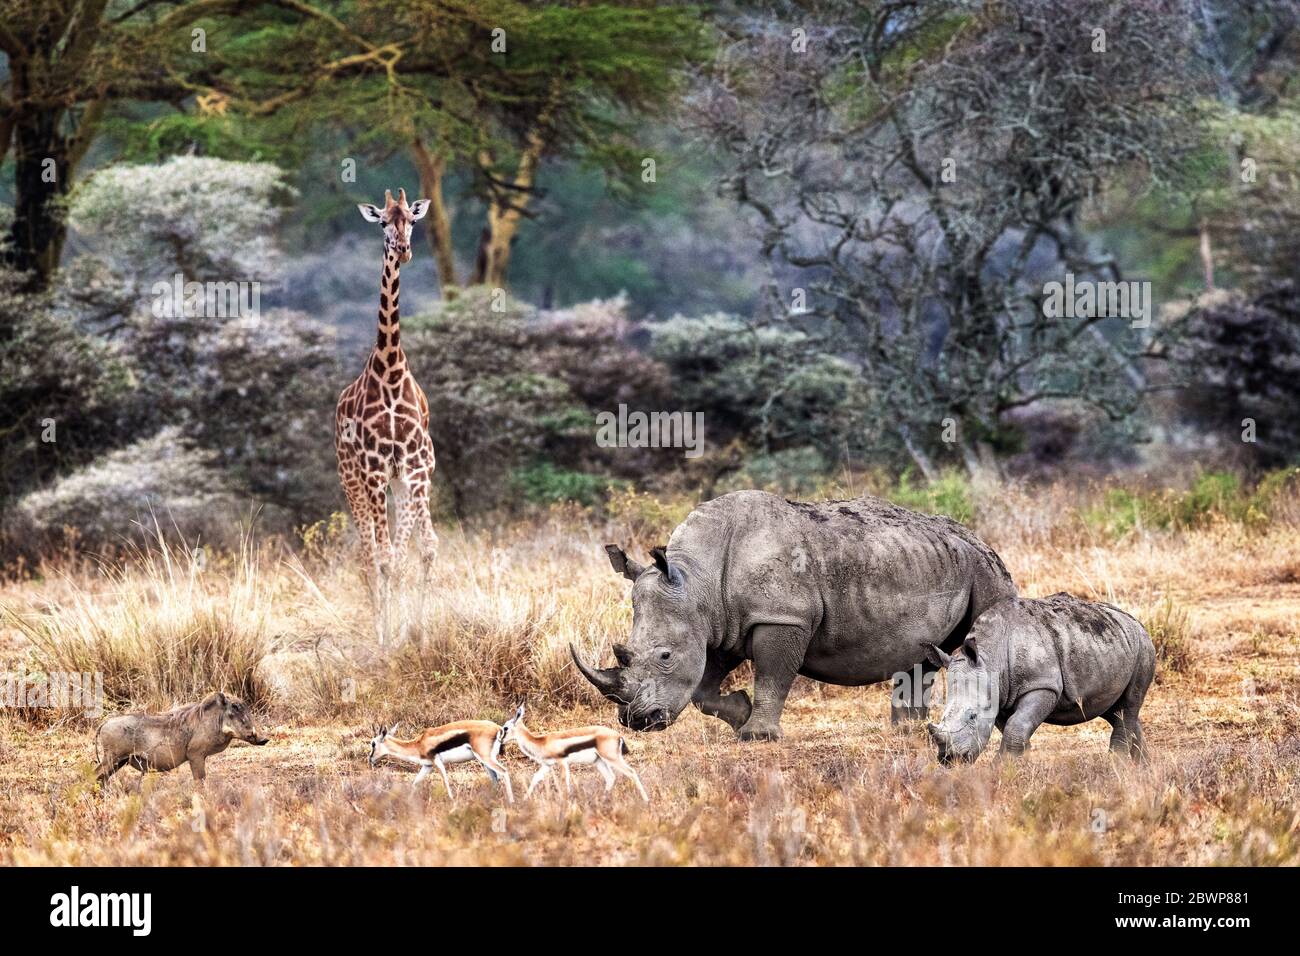 Magica fauna selvatica scena safari nella giungla di febbre albero del lago Nakuru, Kenya Africa con rinoceronti in pericolo e giraffa di Rotheschild Foto Stock